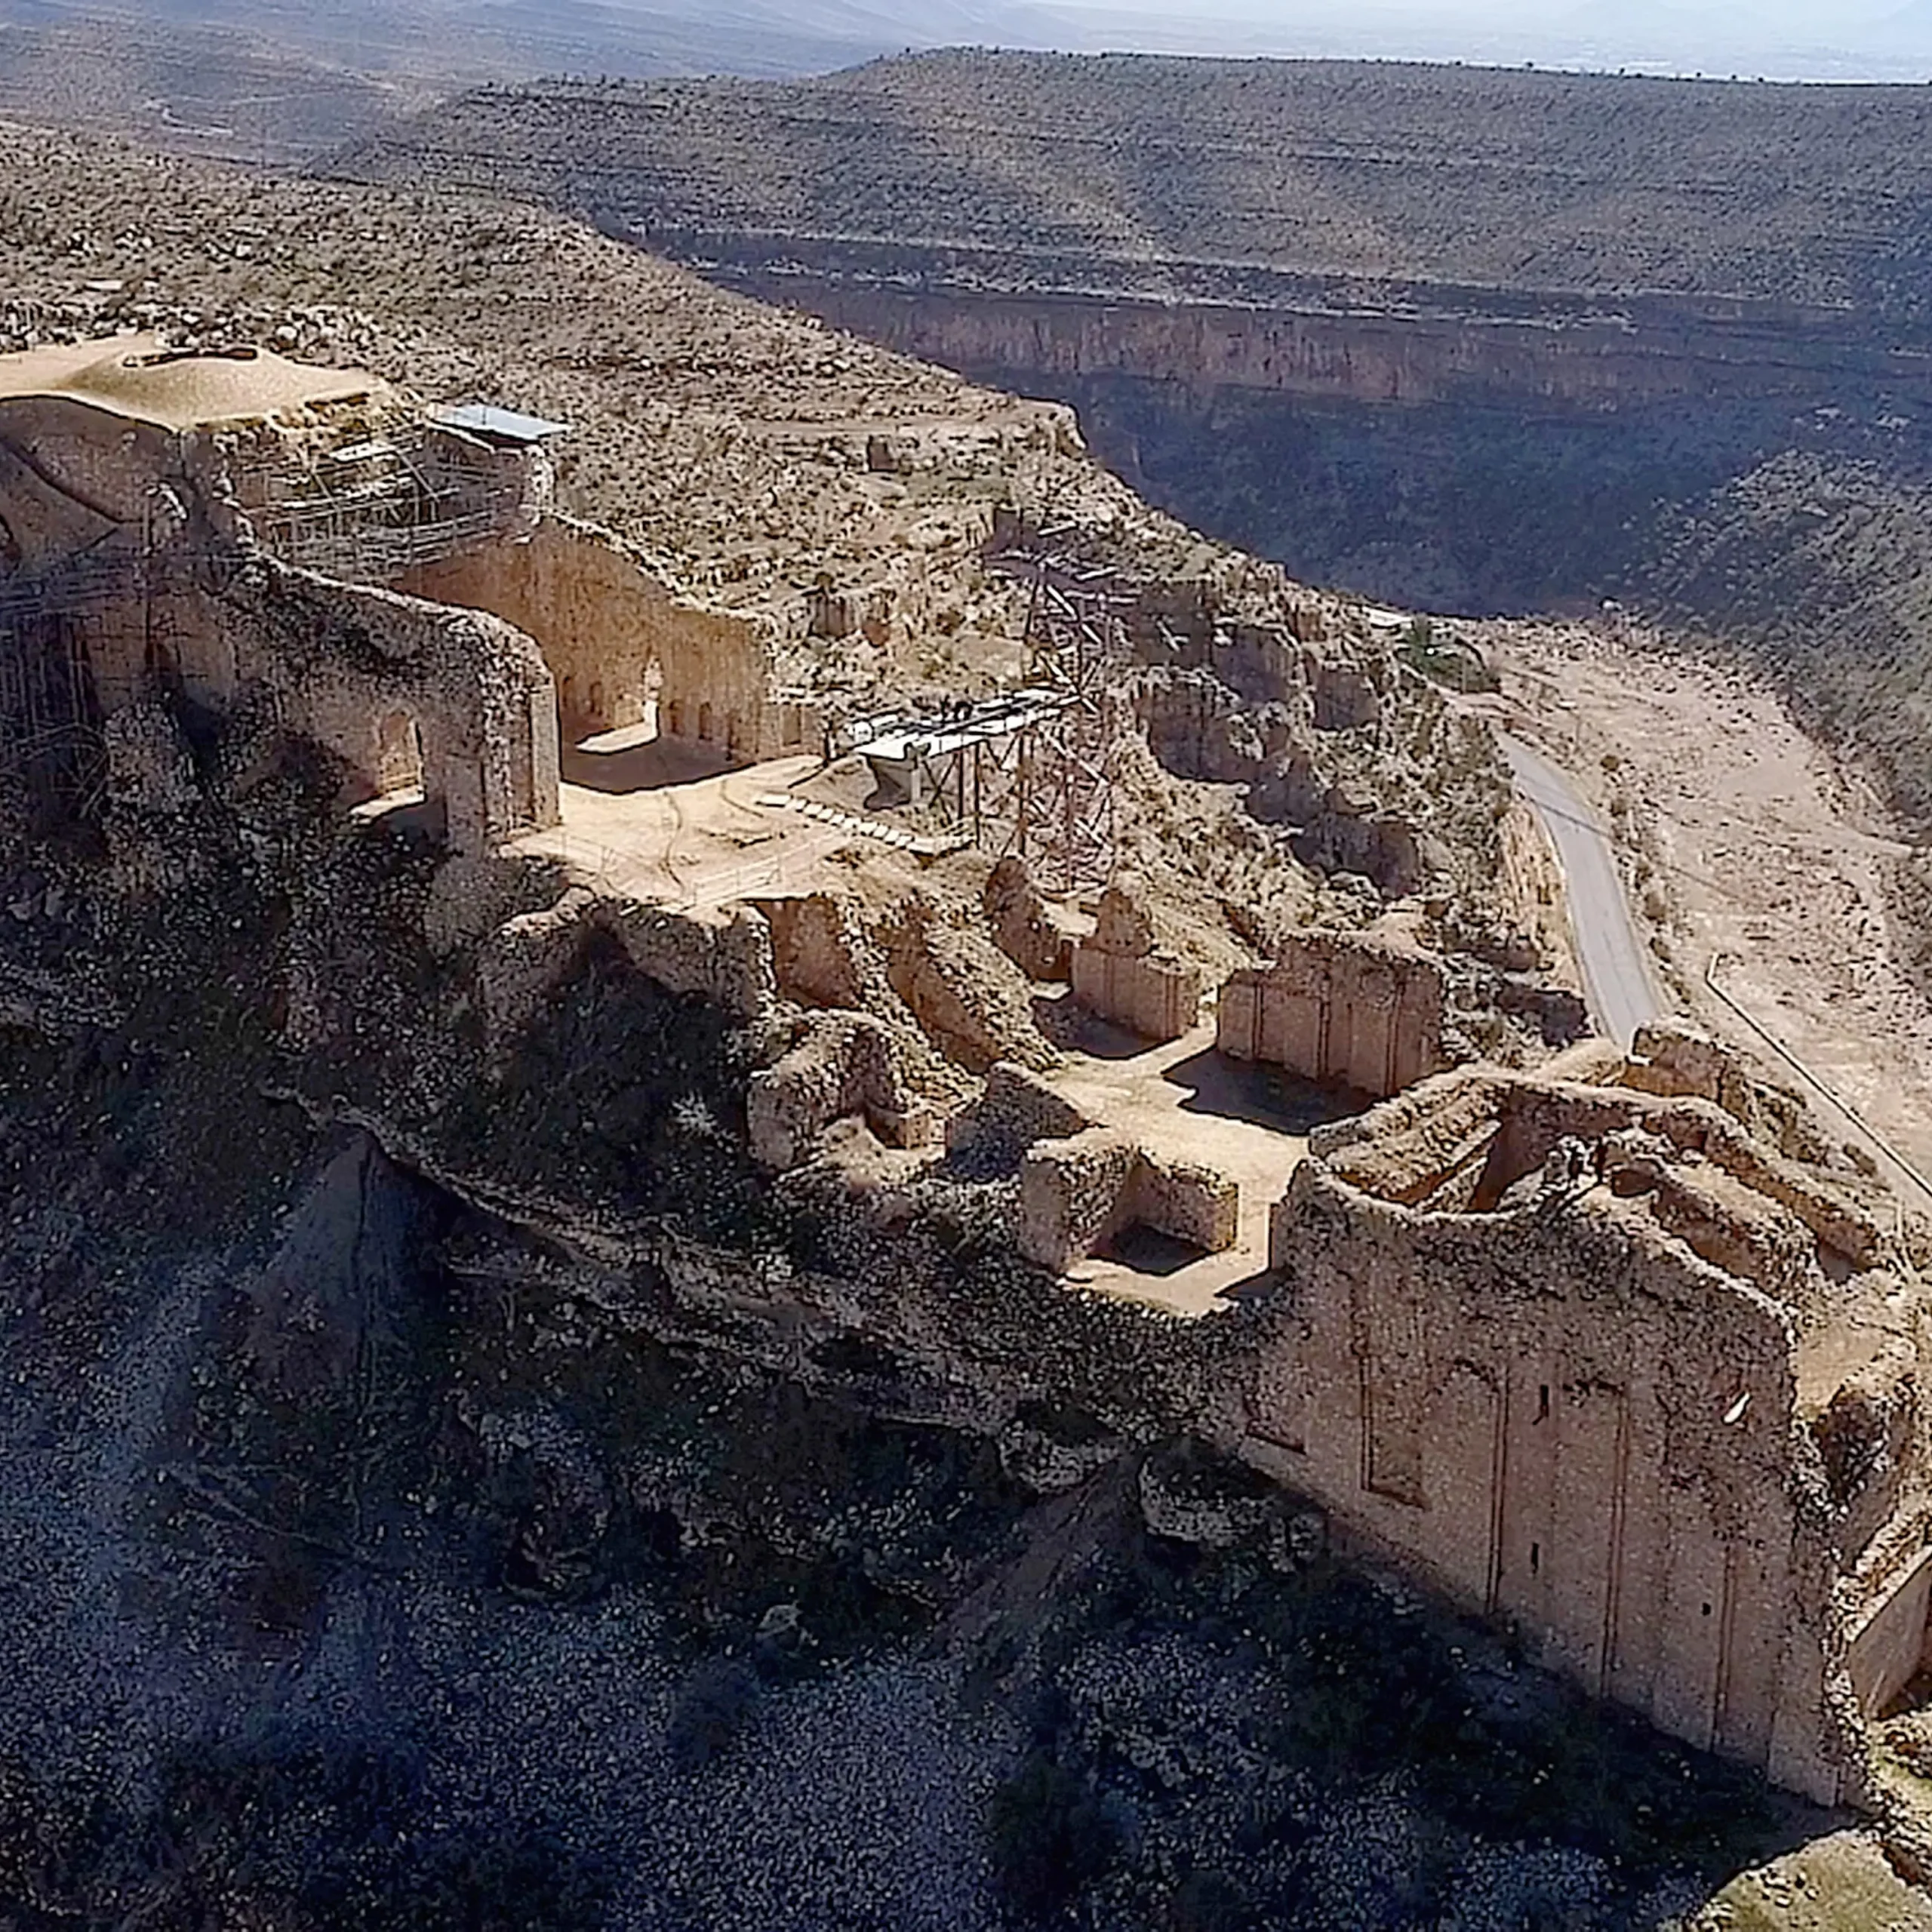 Qaleh-Dokhtar-Fortress-in-Iran